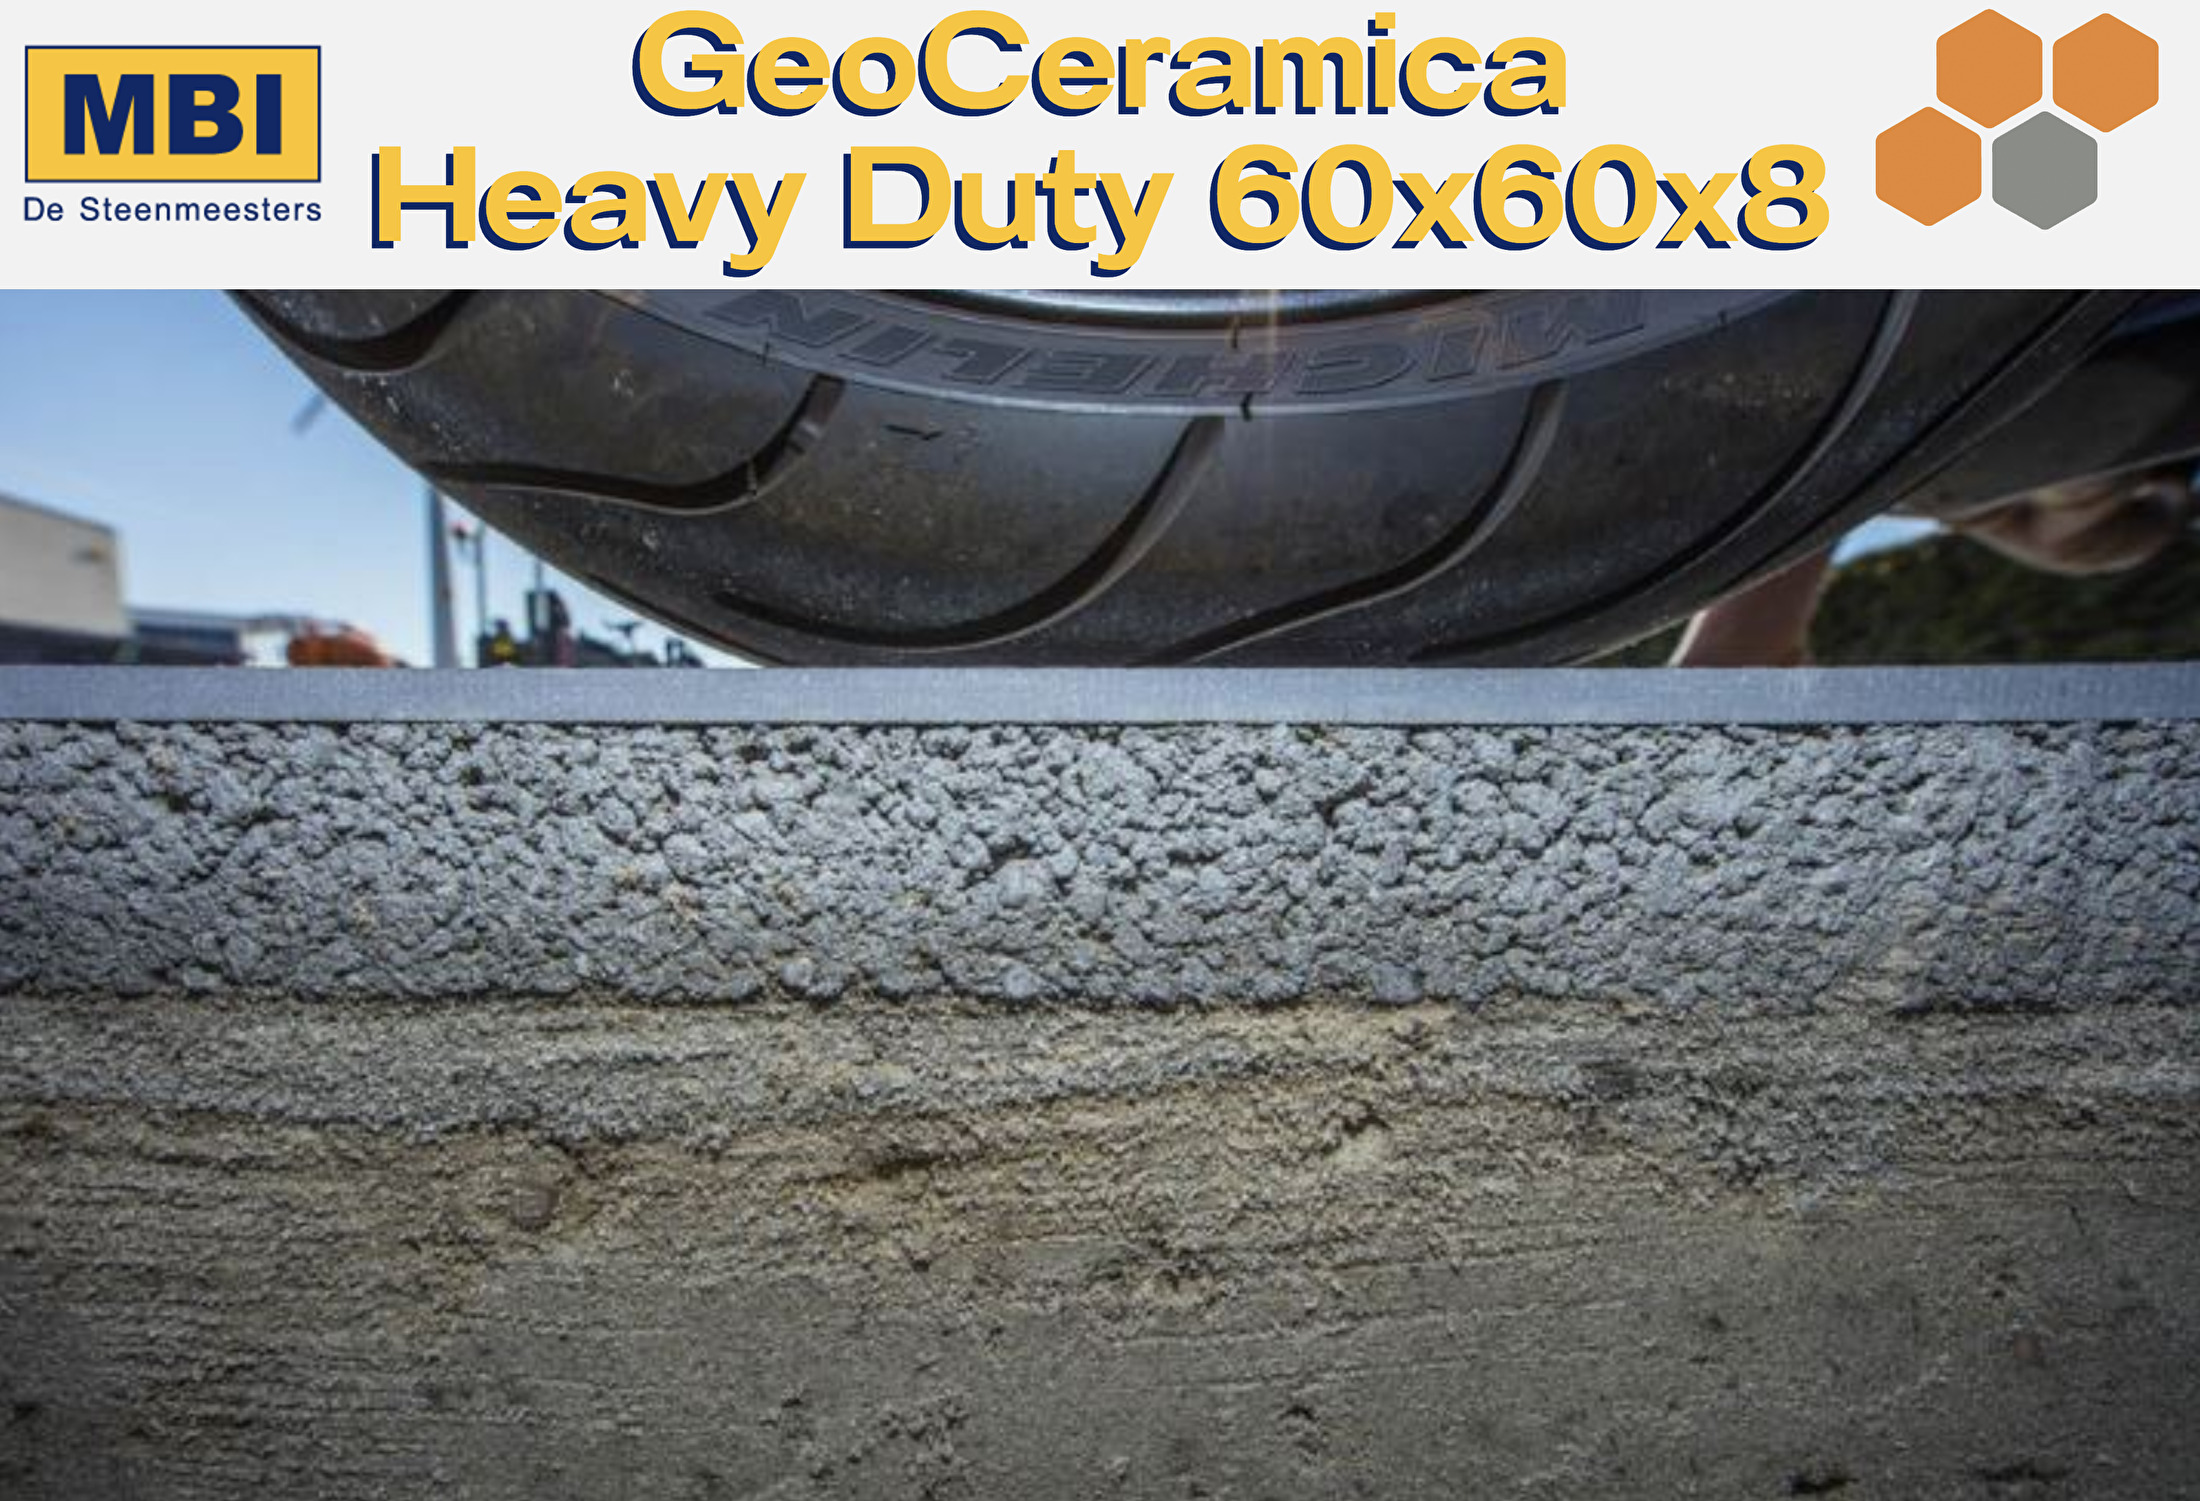 GeoCeramica Heavy Duty 60x60x8